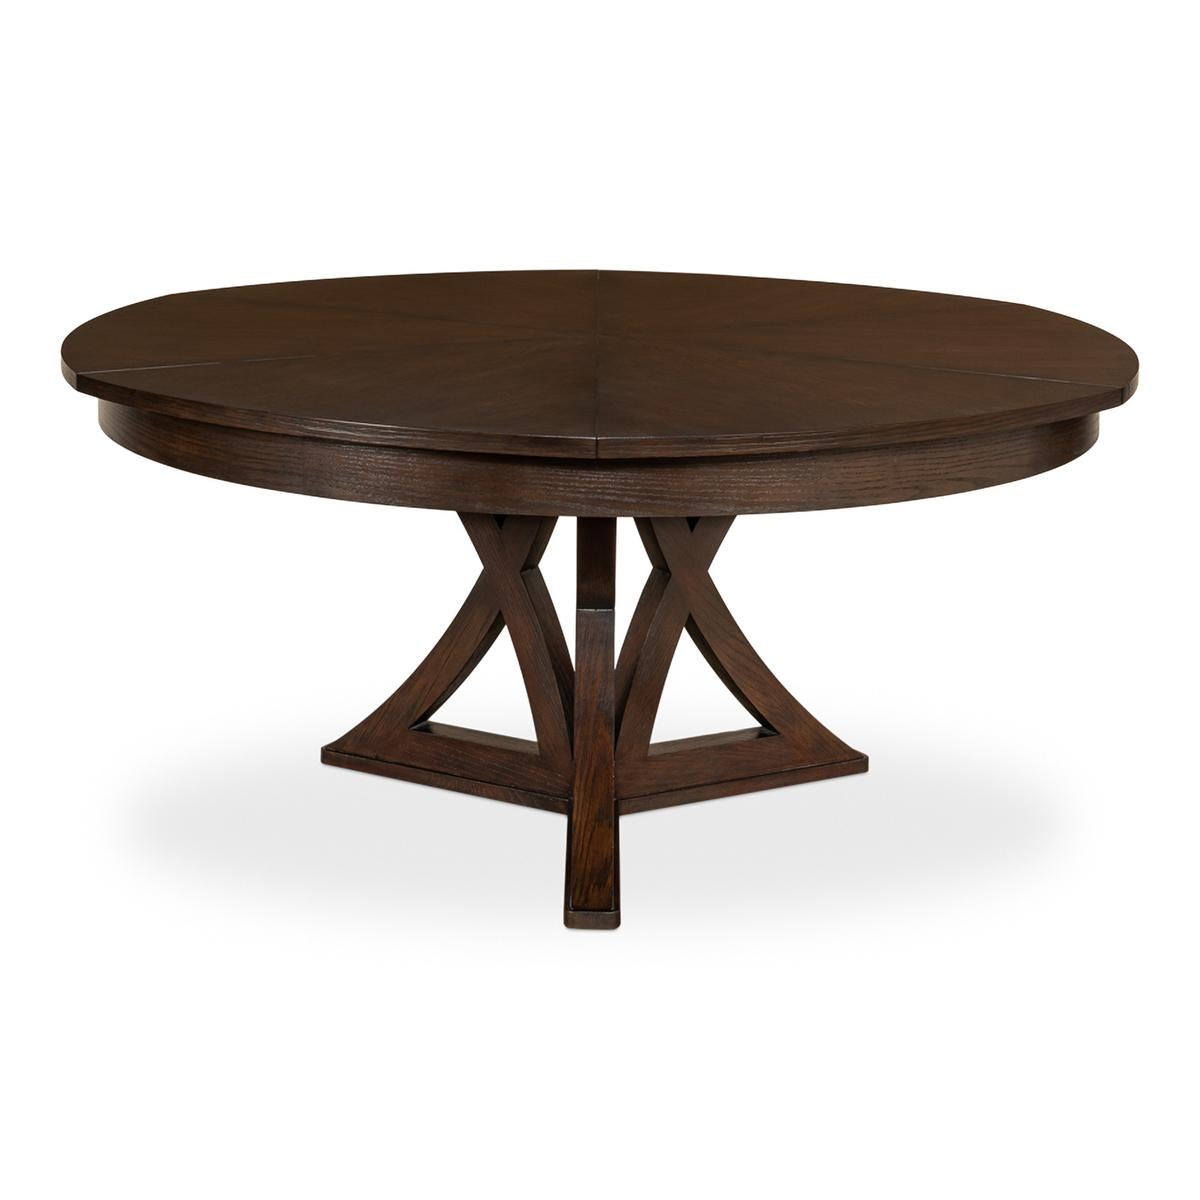 Une table à manger ronde à rallonge en chêne rustique de style transitionnel. La table en chêne dans notre finition chaude est une excellente combinaison de style classique et de commodités modernes. Fermée, elle mesure 64